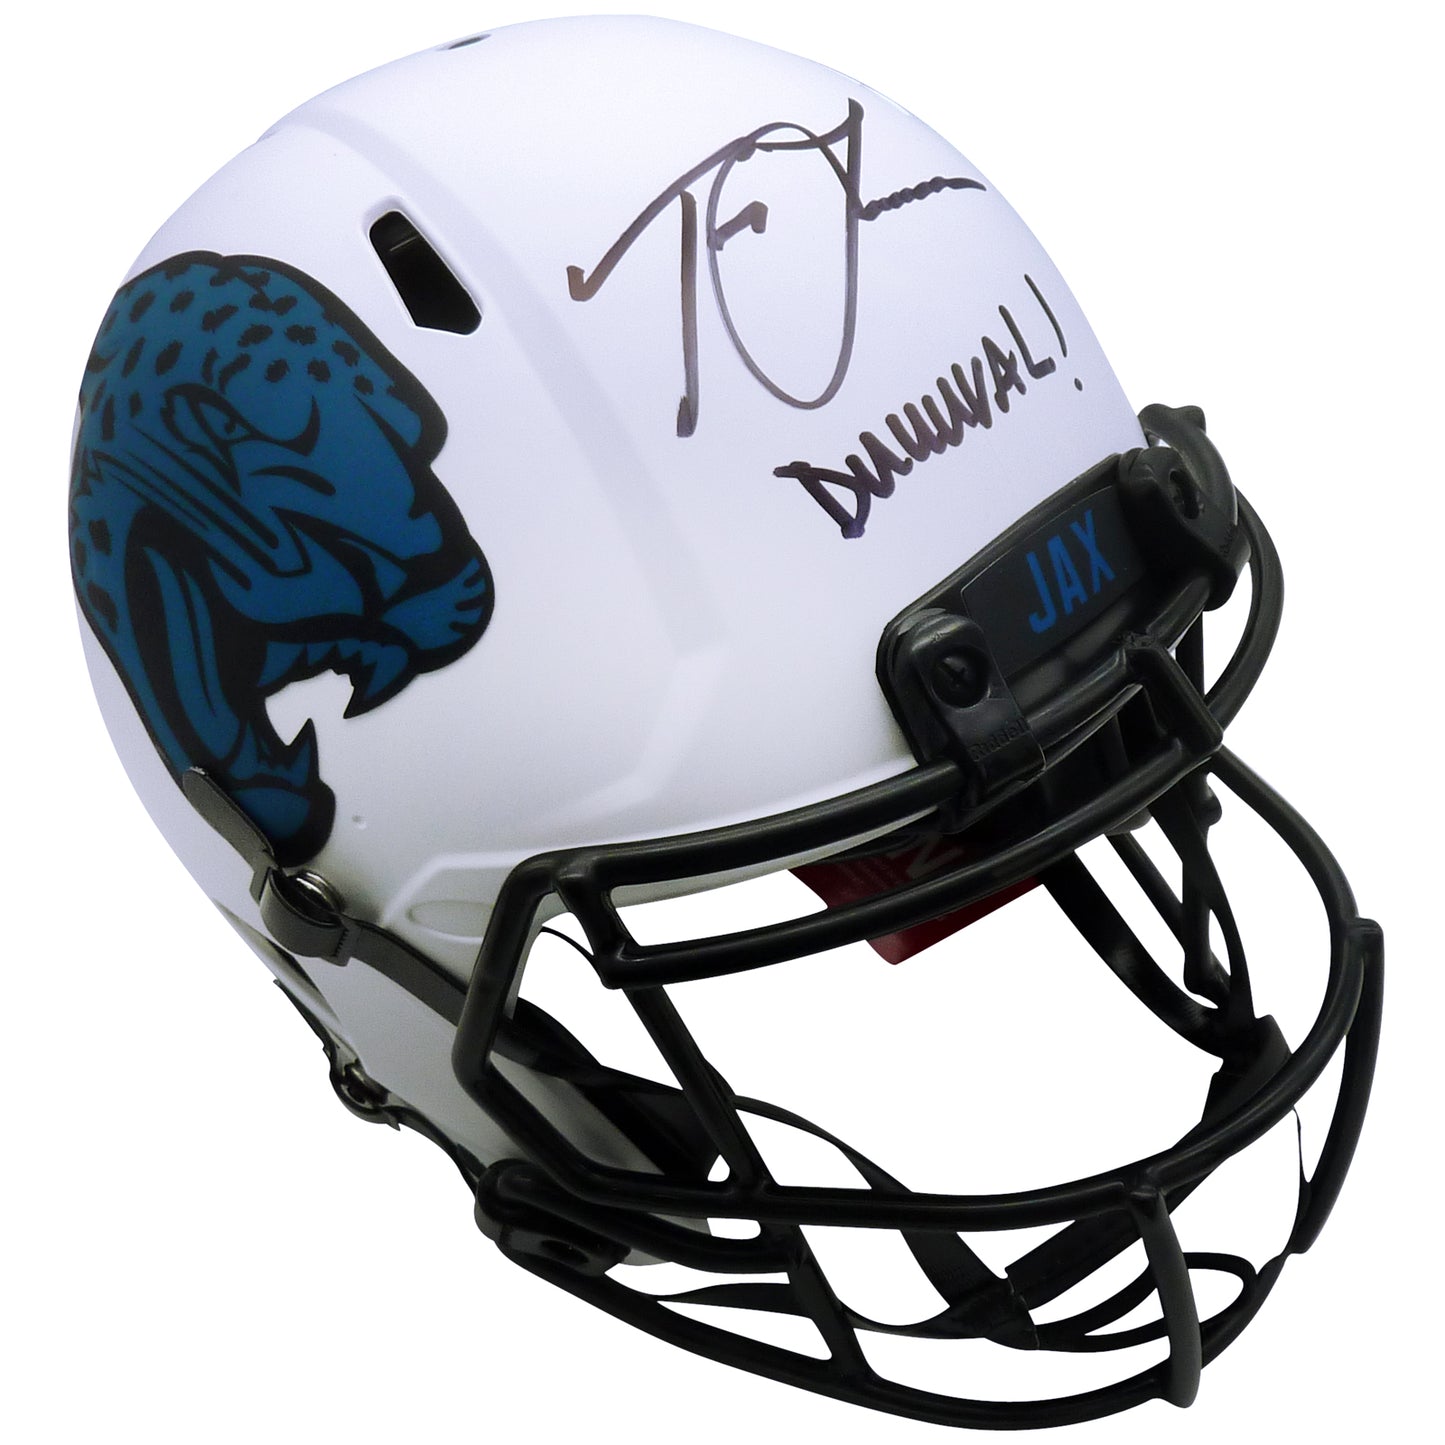 Trevor Lawrence Autographed Jacksonville Jaguars (LUNAR Eclipse) Authentic Proline Helmet w/ "Duuuval" - Fanatics